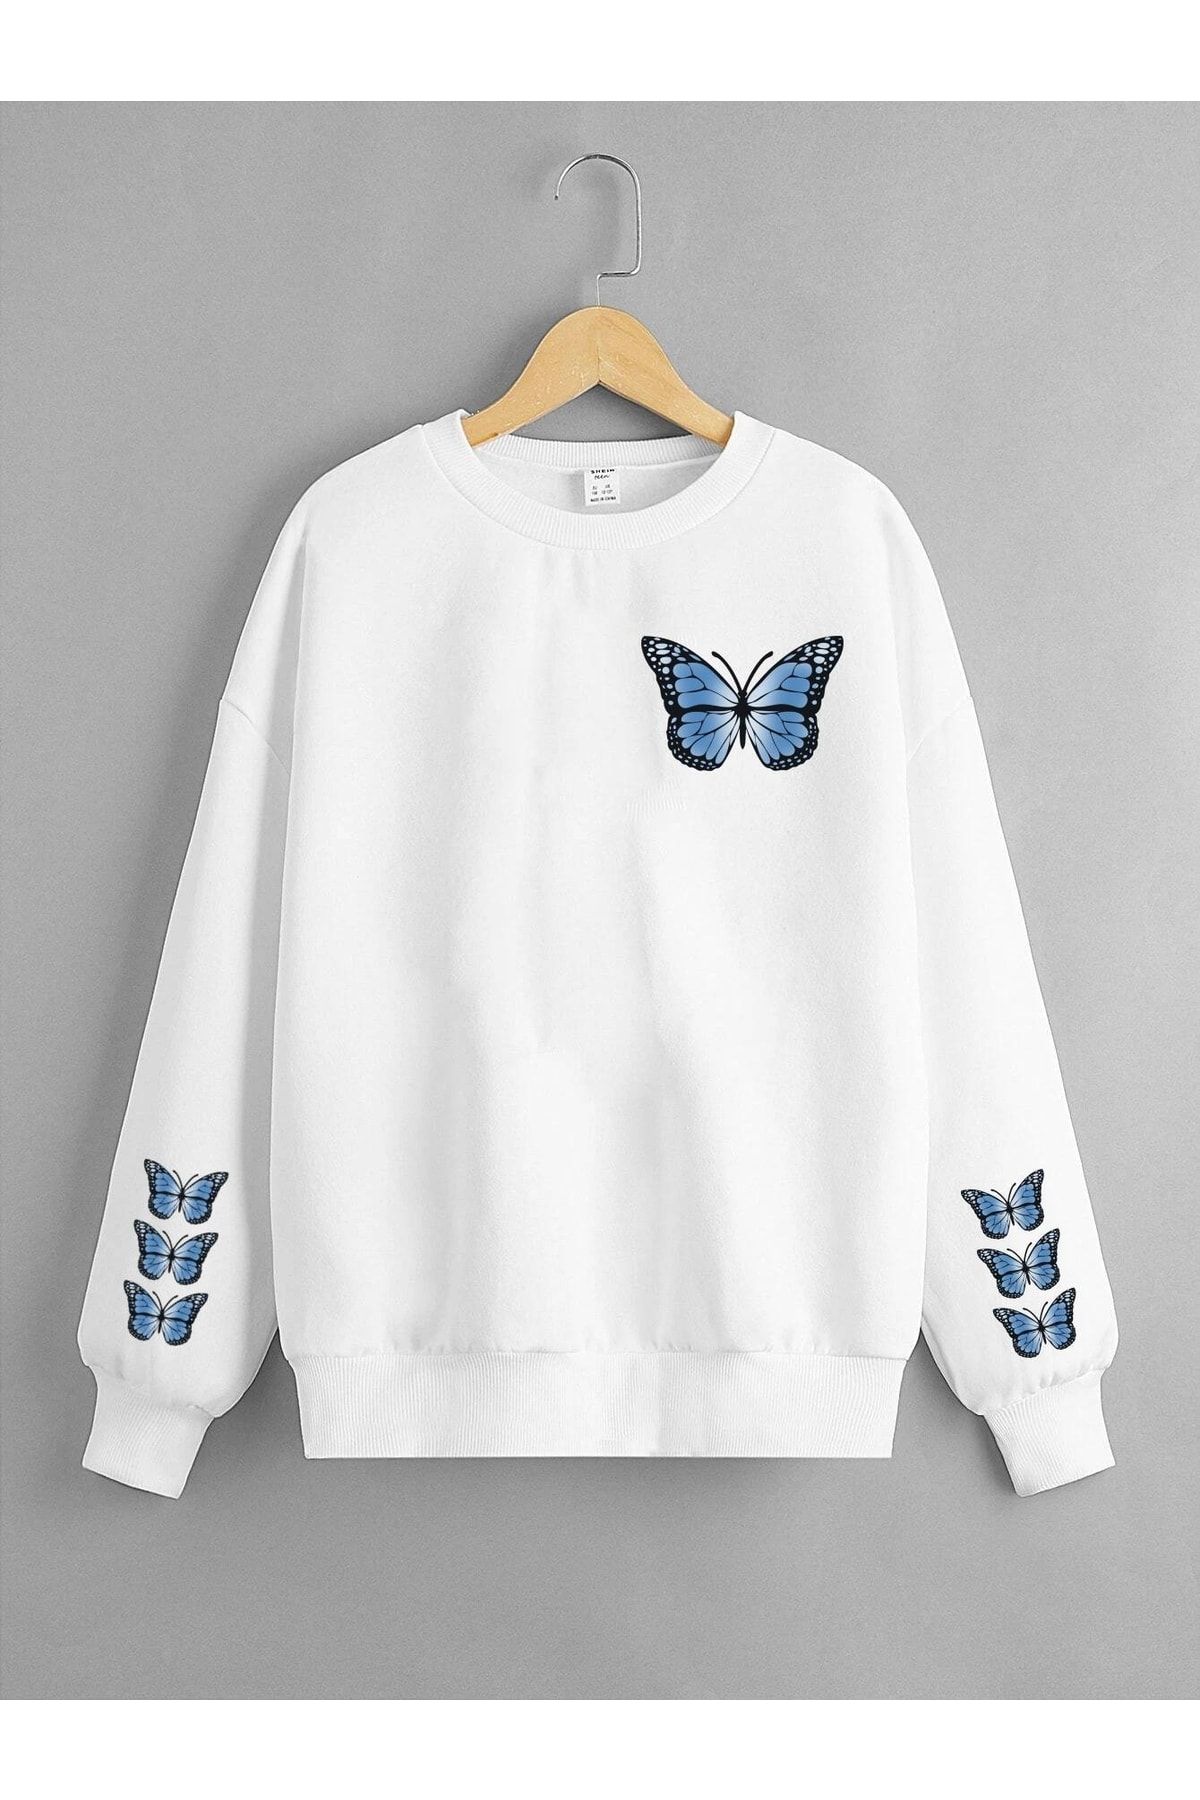 LePold Beyaz Mavi Kelebek Butterfly Baskılı Kız Sweatshirt